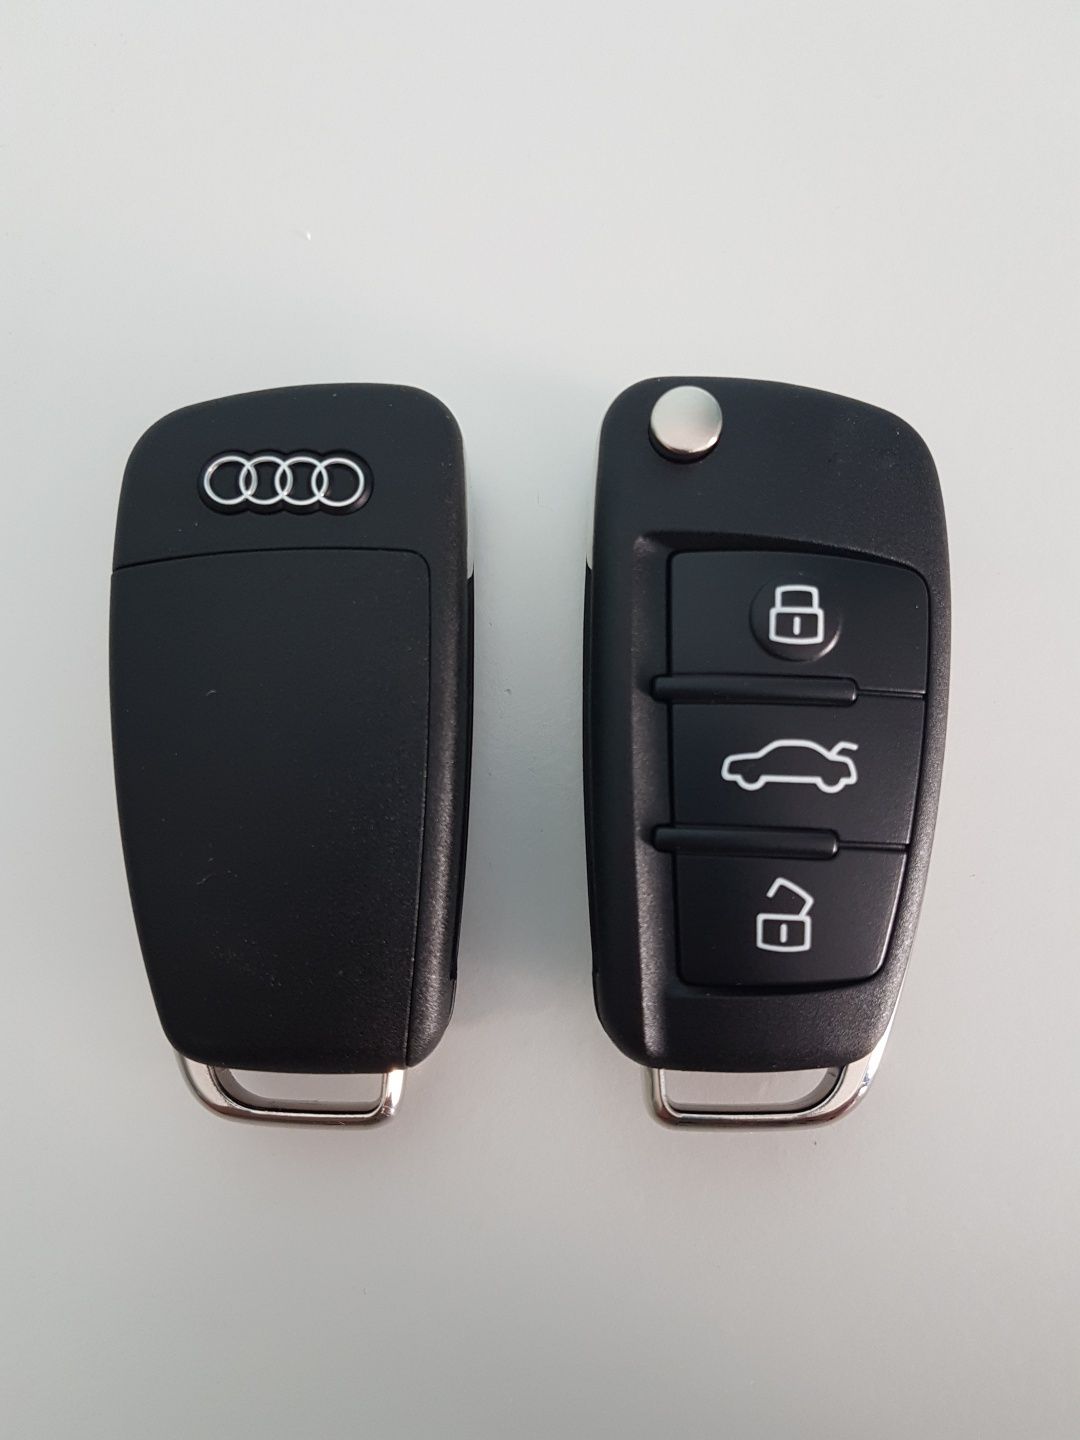 Programat chei, Copiat chei , programat chei Audi A3 ,  A4